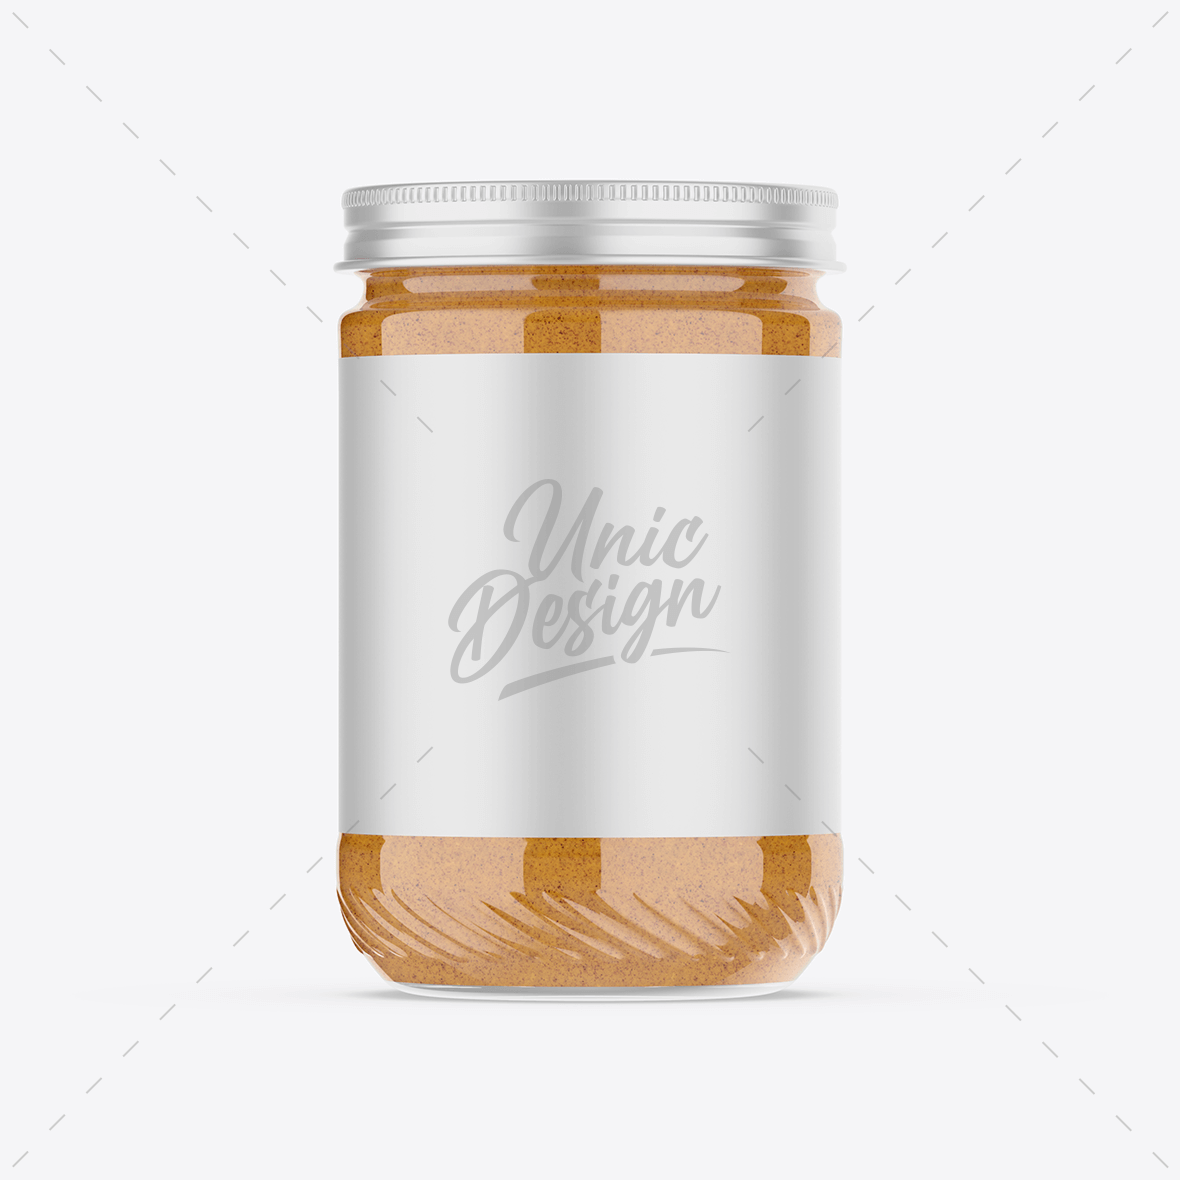 Peanut Butter Jar Mockup